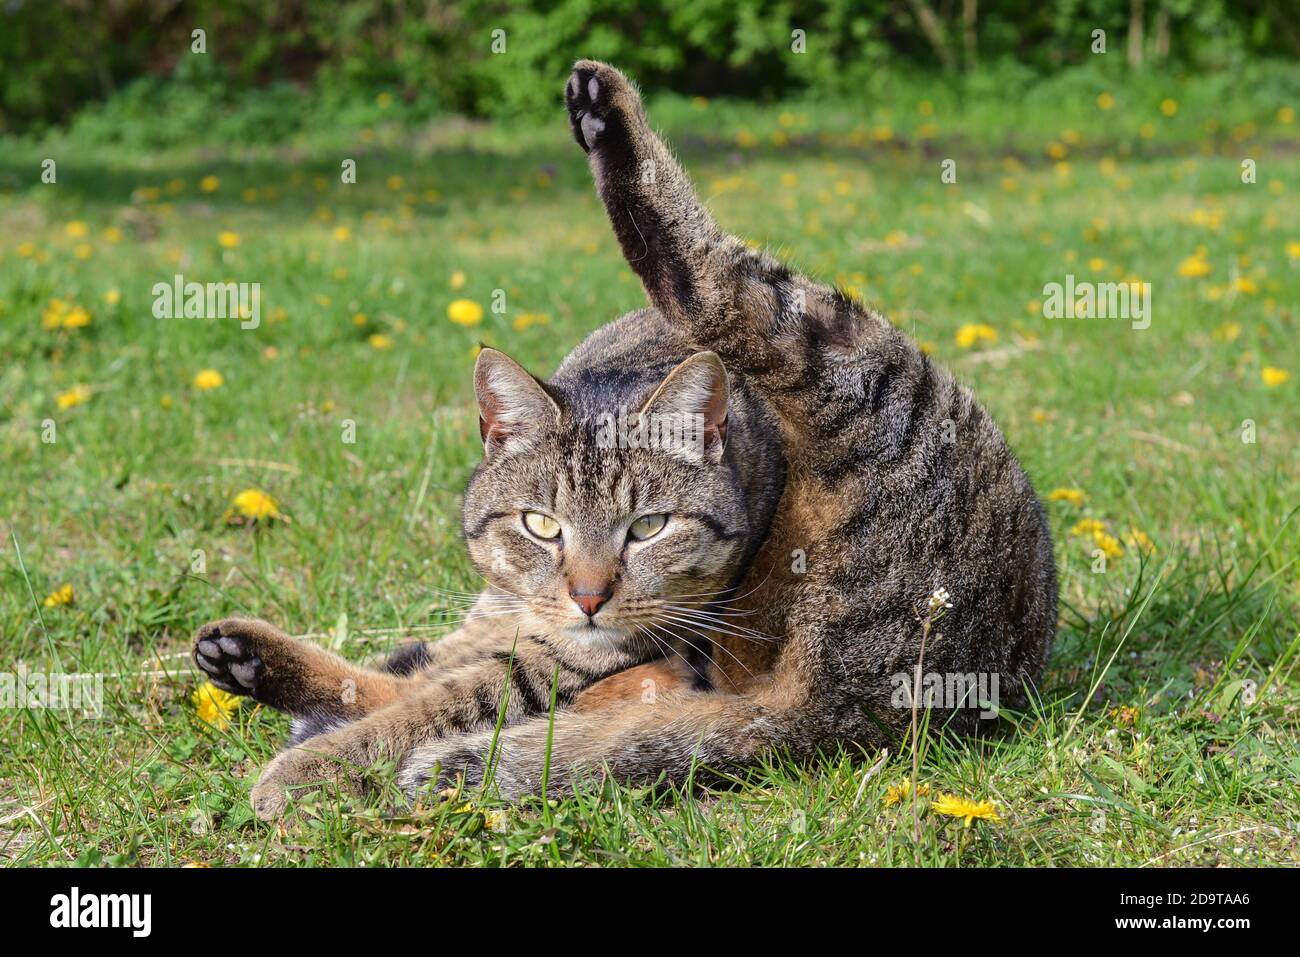 Katzen-Yoga: Eine Katze übt komische Bewegungen auf dem Bauernhof - gato-yoga: Un gato practicando gimnasia extraña en una granja Foto de stock